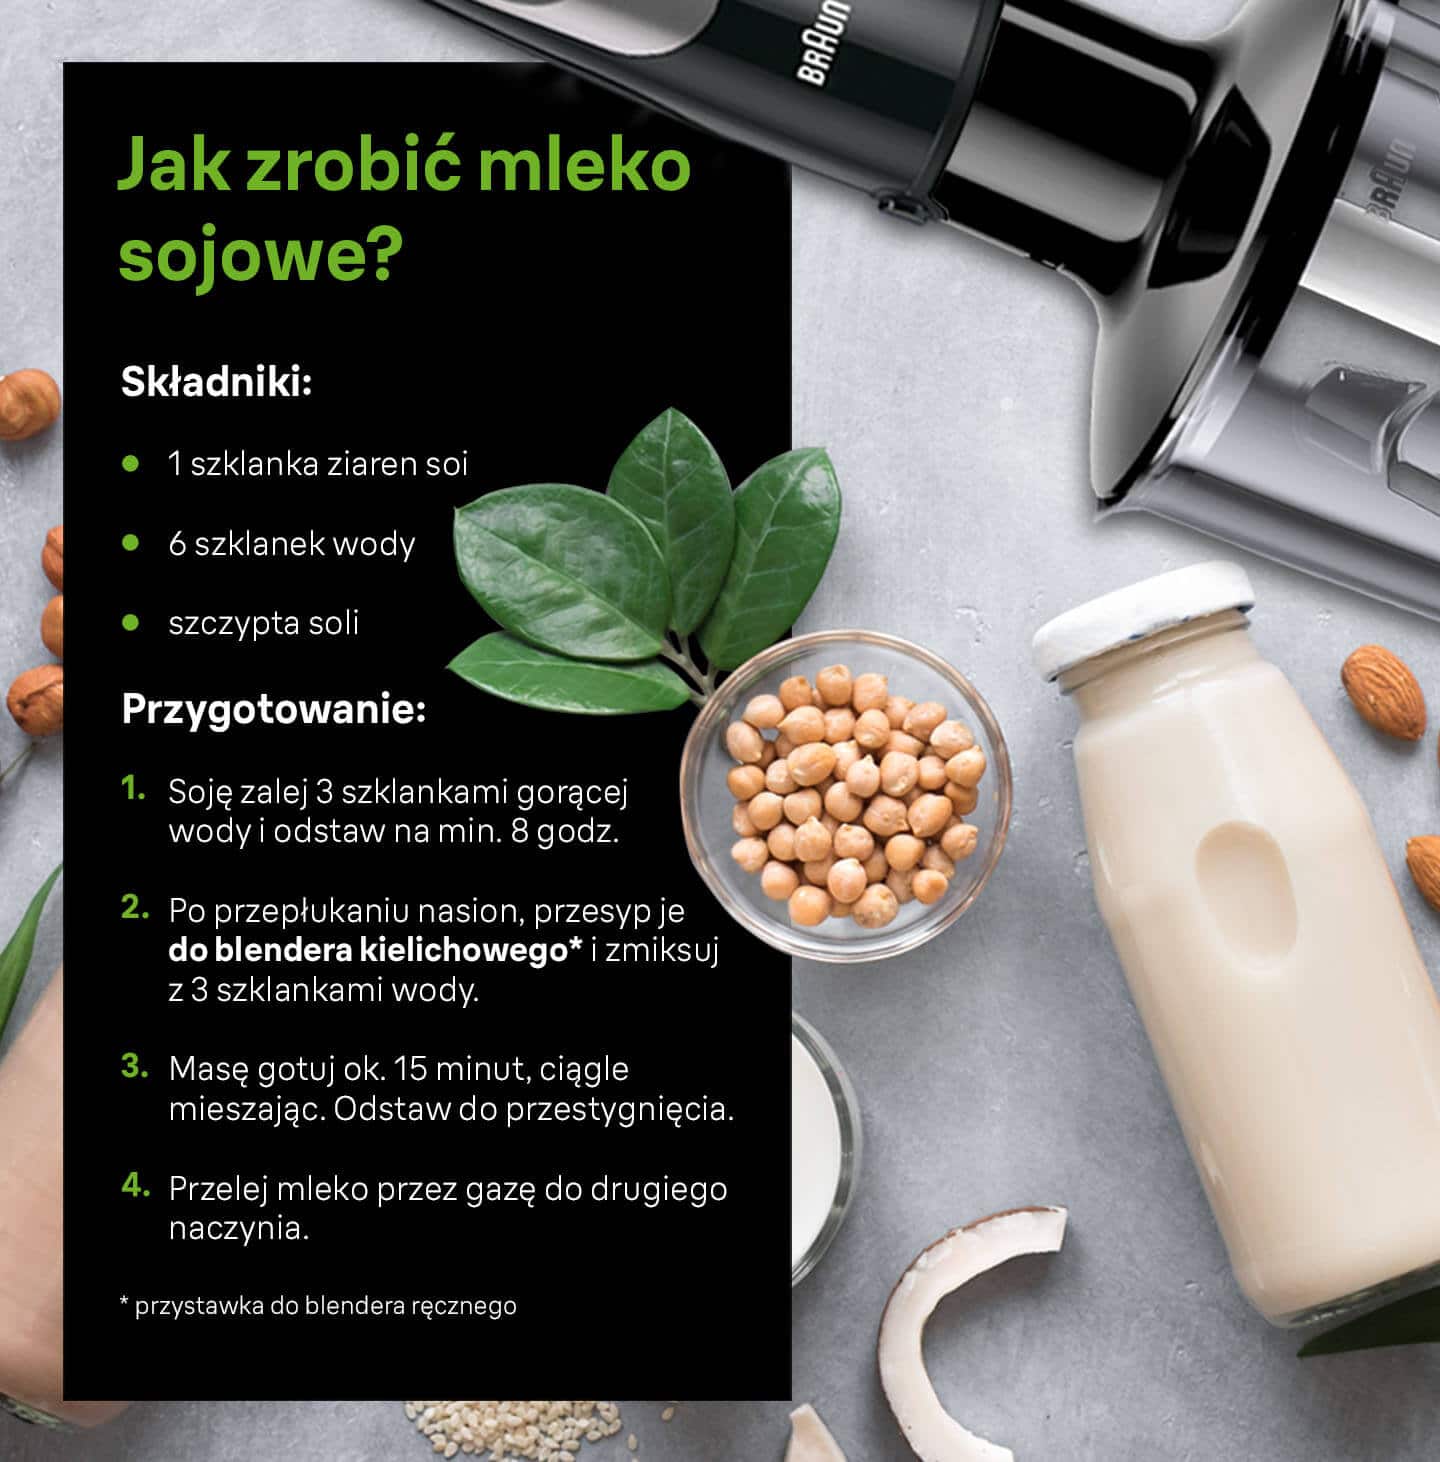 Jak zrobić mleko sojowe? Potrzebne składniki i sposób przygotowania - infografika